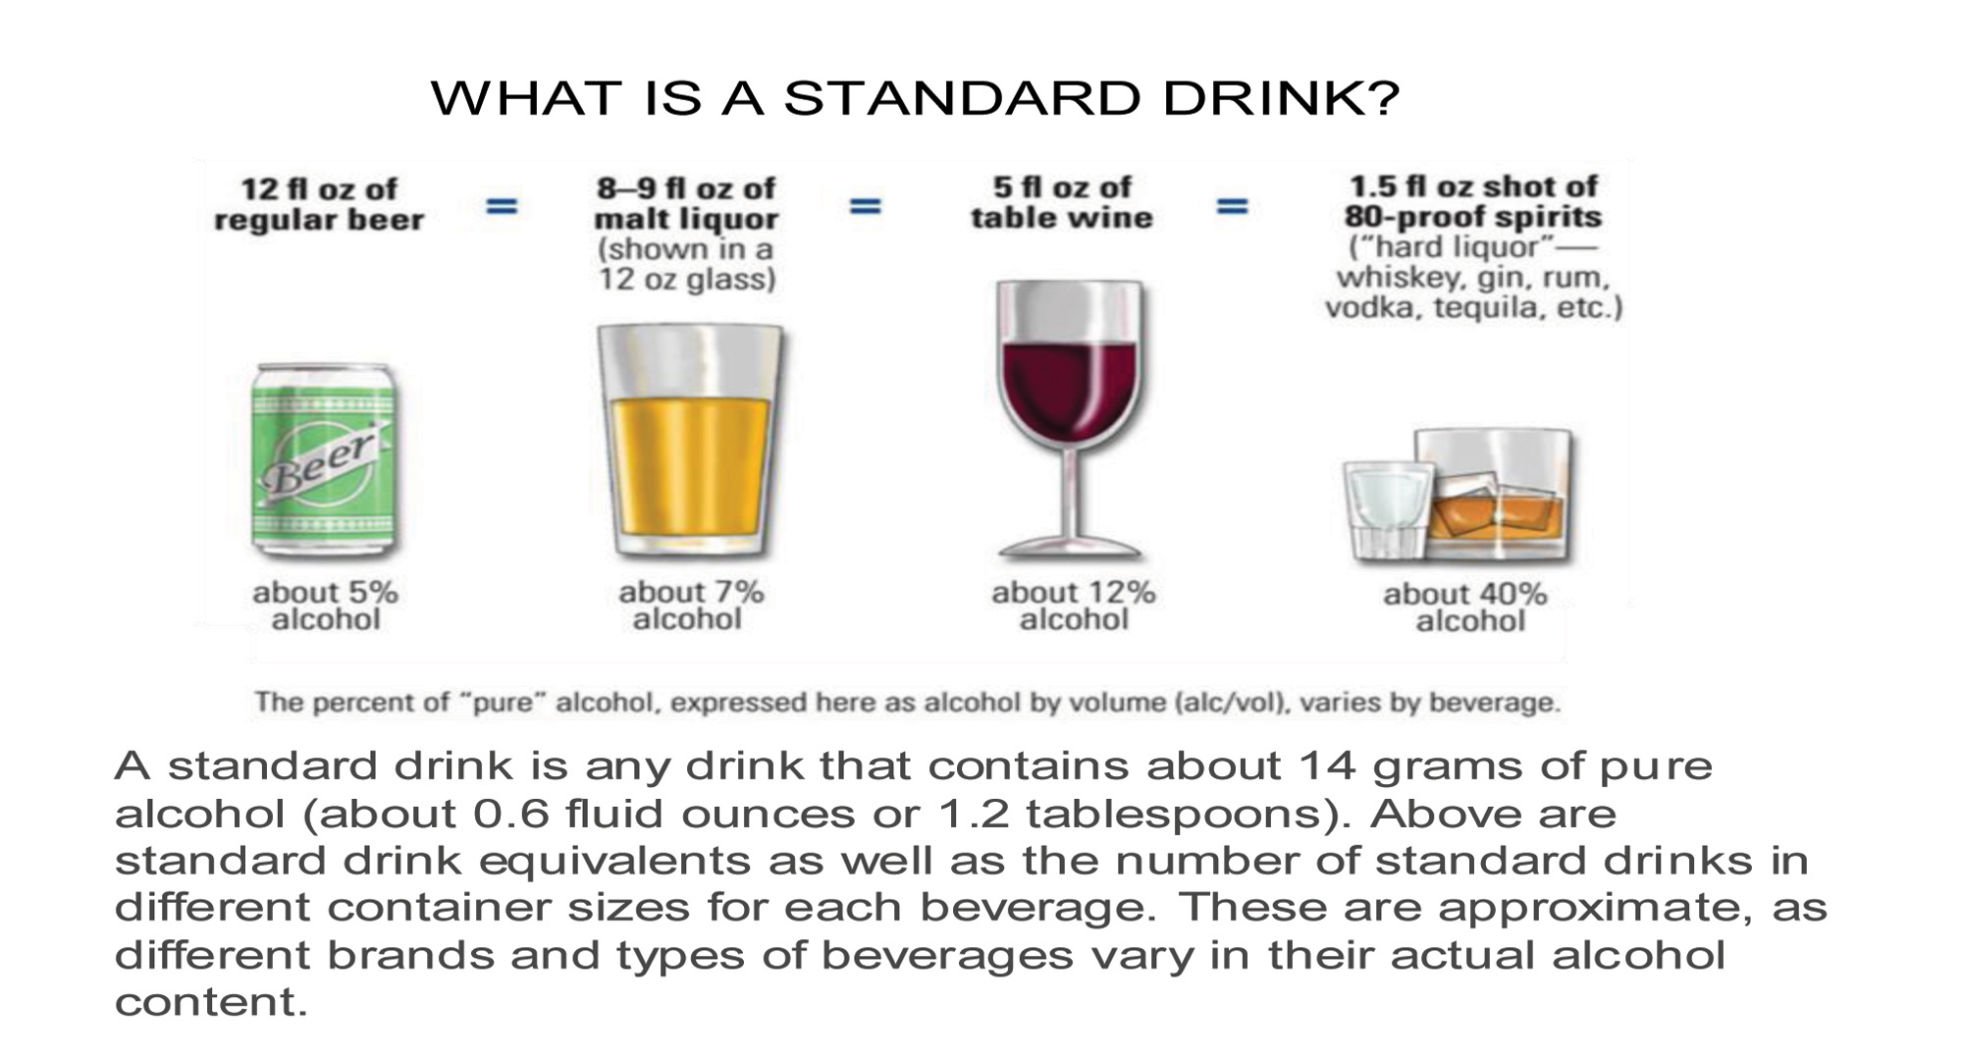 Standard Drink Chart